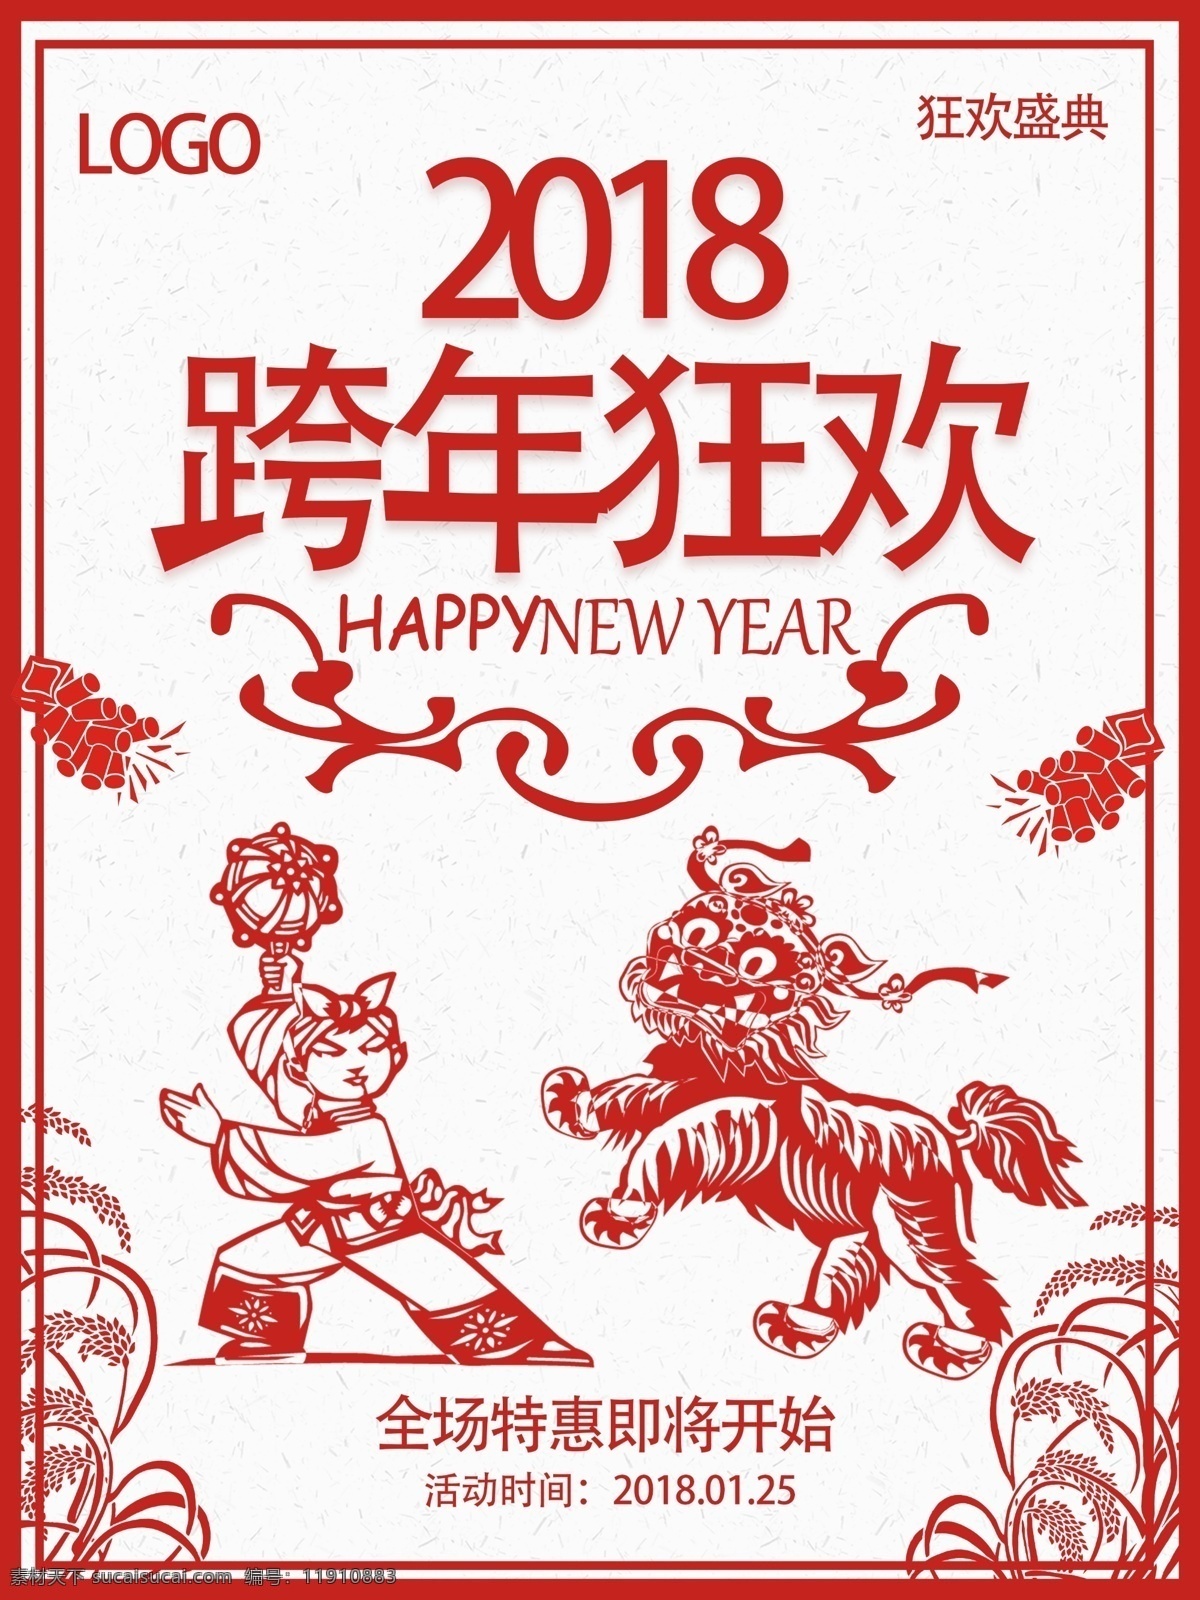 跨 年夜 狂欢 剪纸 风 红色 喜庆 2018 年 春节 跨年夜 元旦海报